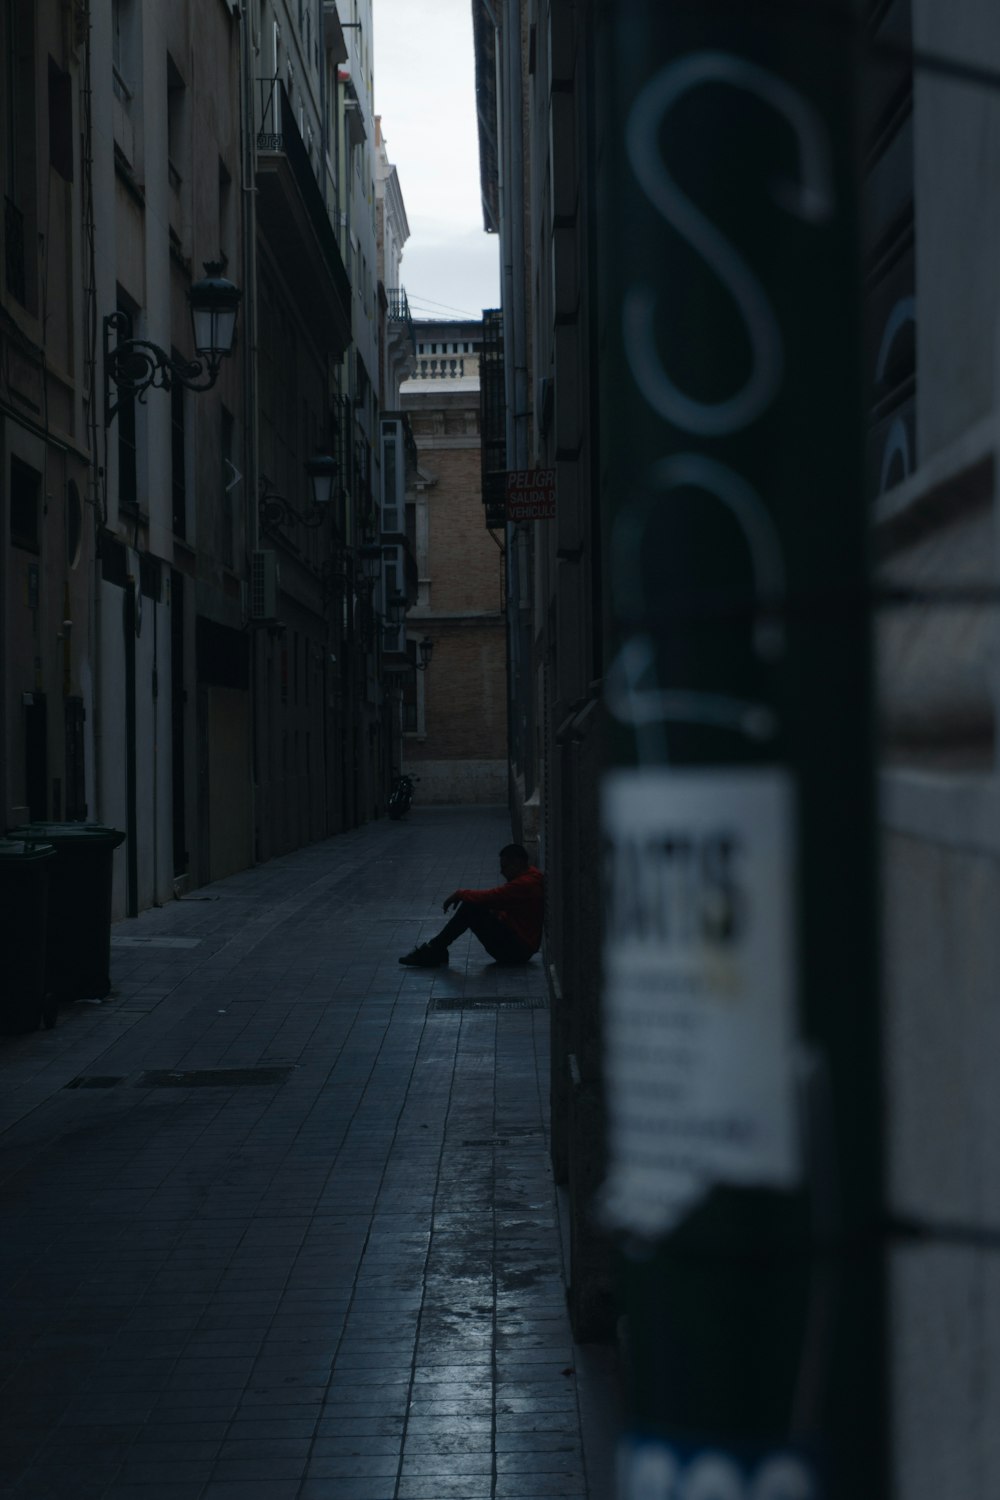 a person sitting on a sidewalk